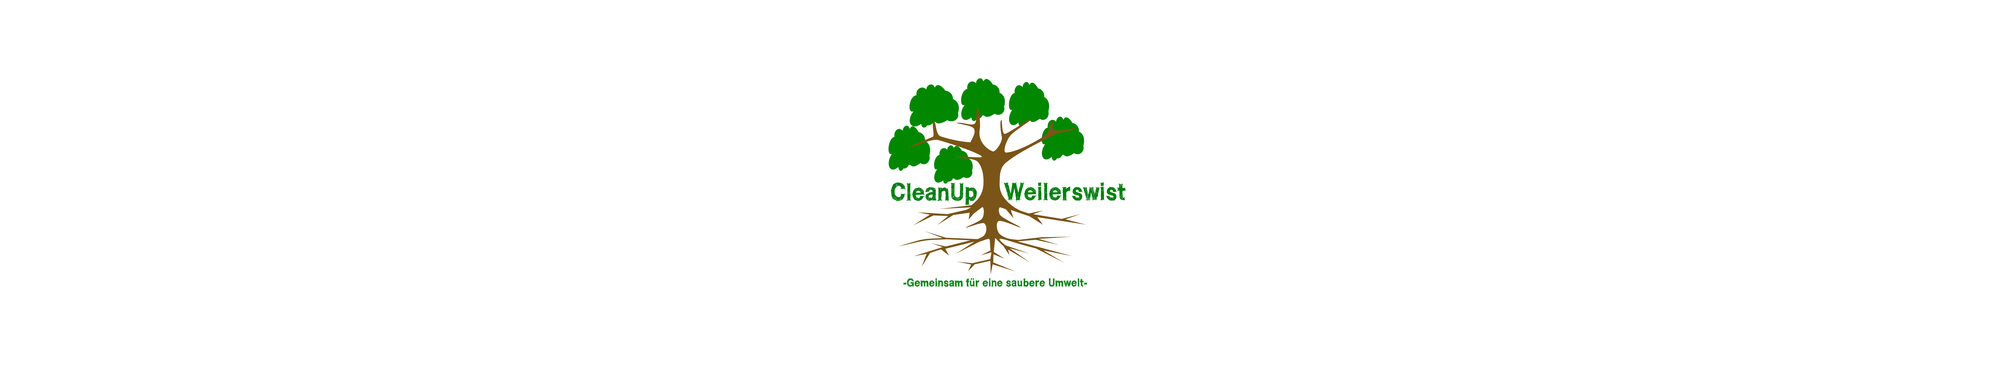 Cleanup Weilerswist